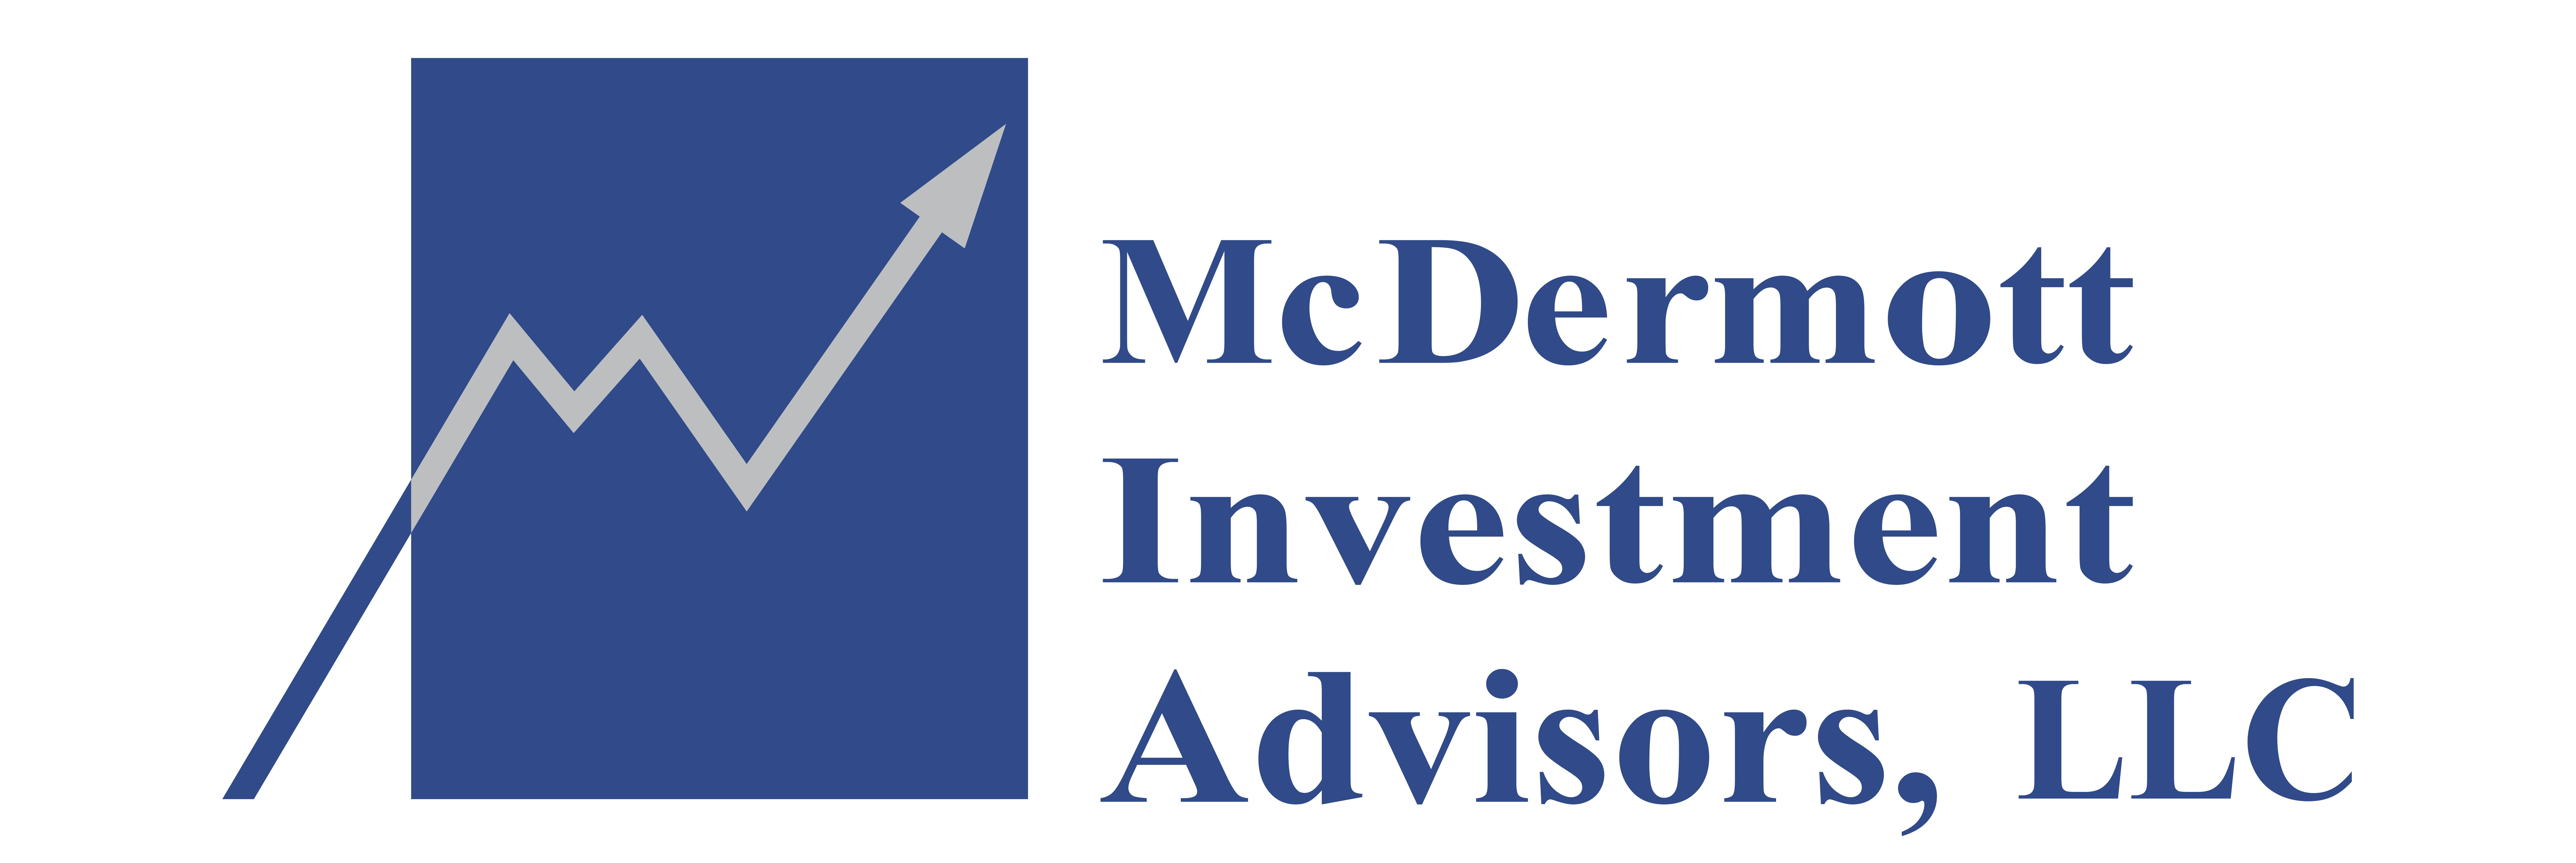 McDermott Investment Advisors